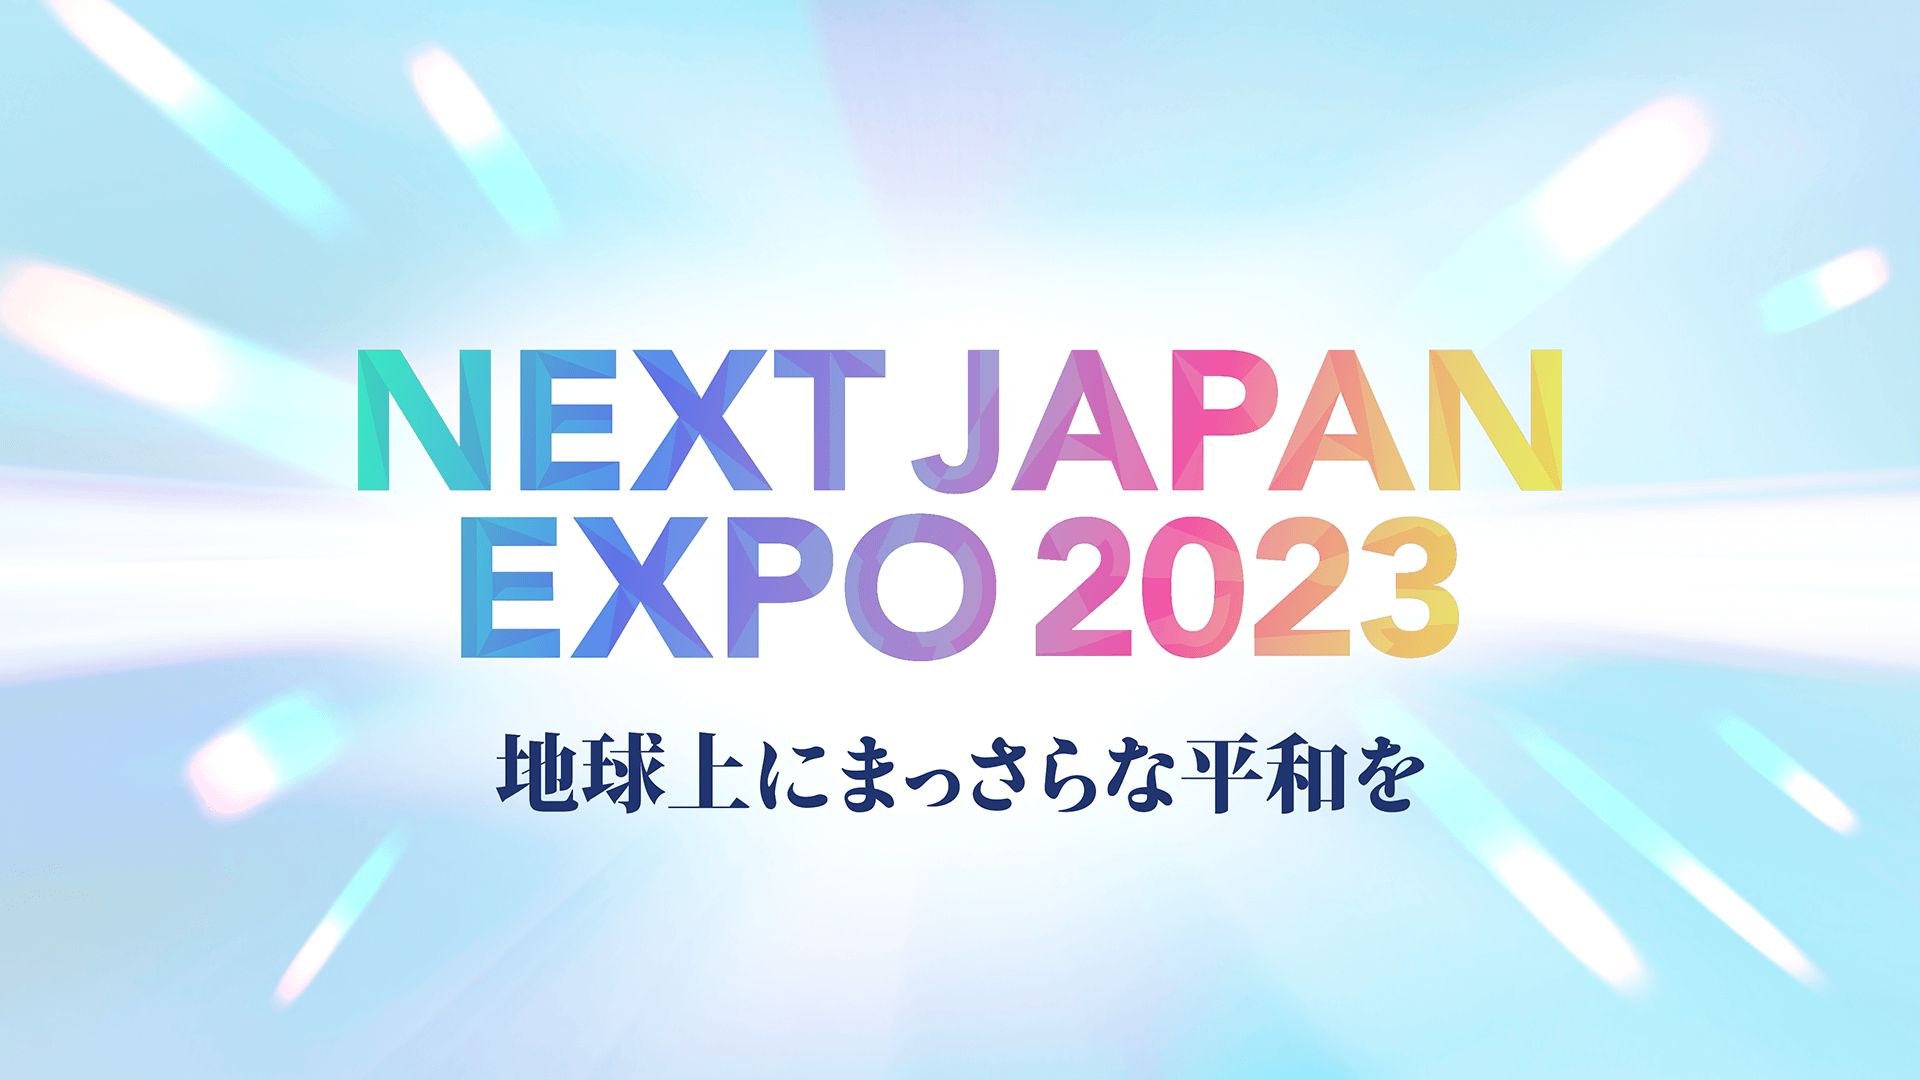 【入場パスの申込受付開始】NEXT JAPAN EXPO 2023 地球上にまっさらな平和を